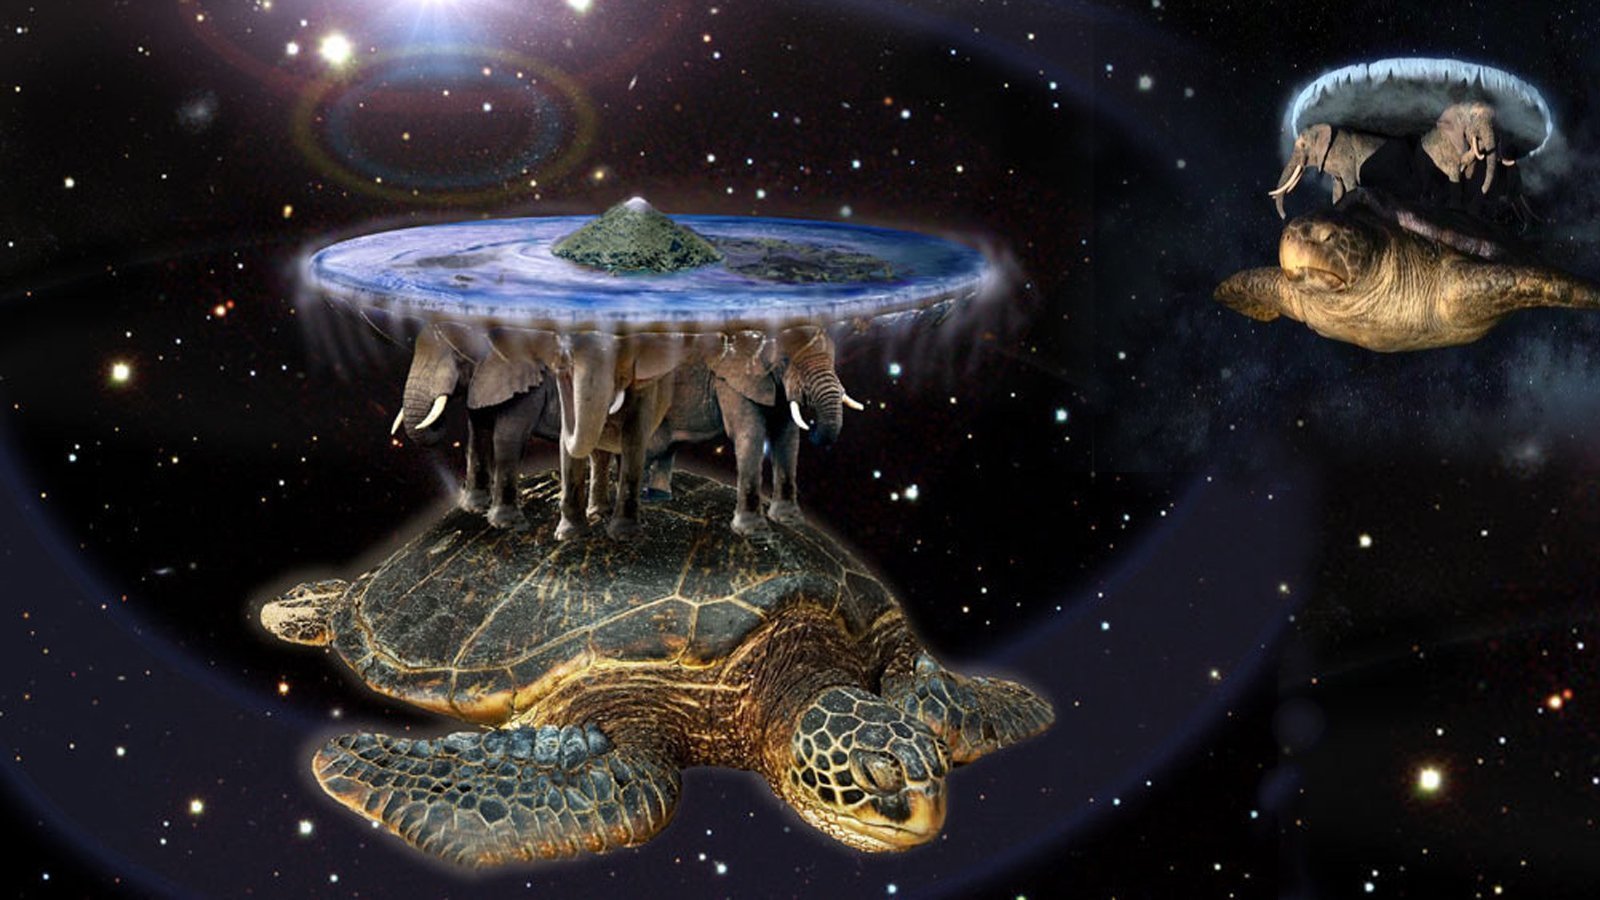 Космическая черепаха Терри Пратчетт. Плоский мир Терри Пратчетт Атуин. Плоская земля Терри Пратчетт. Черепаха три слона плоская земля. 3 слона на черепахе